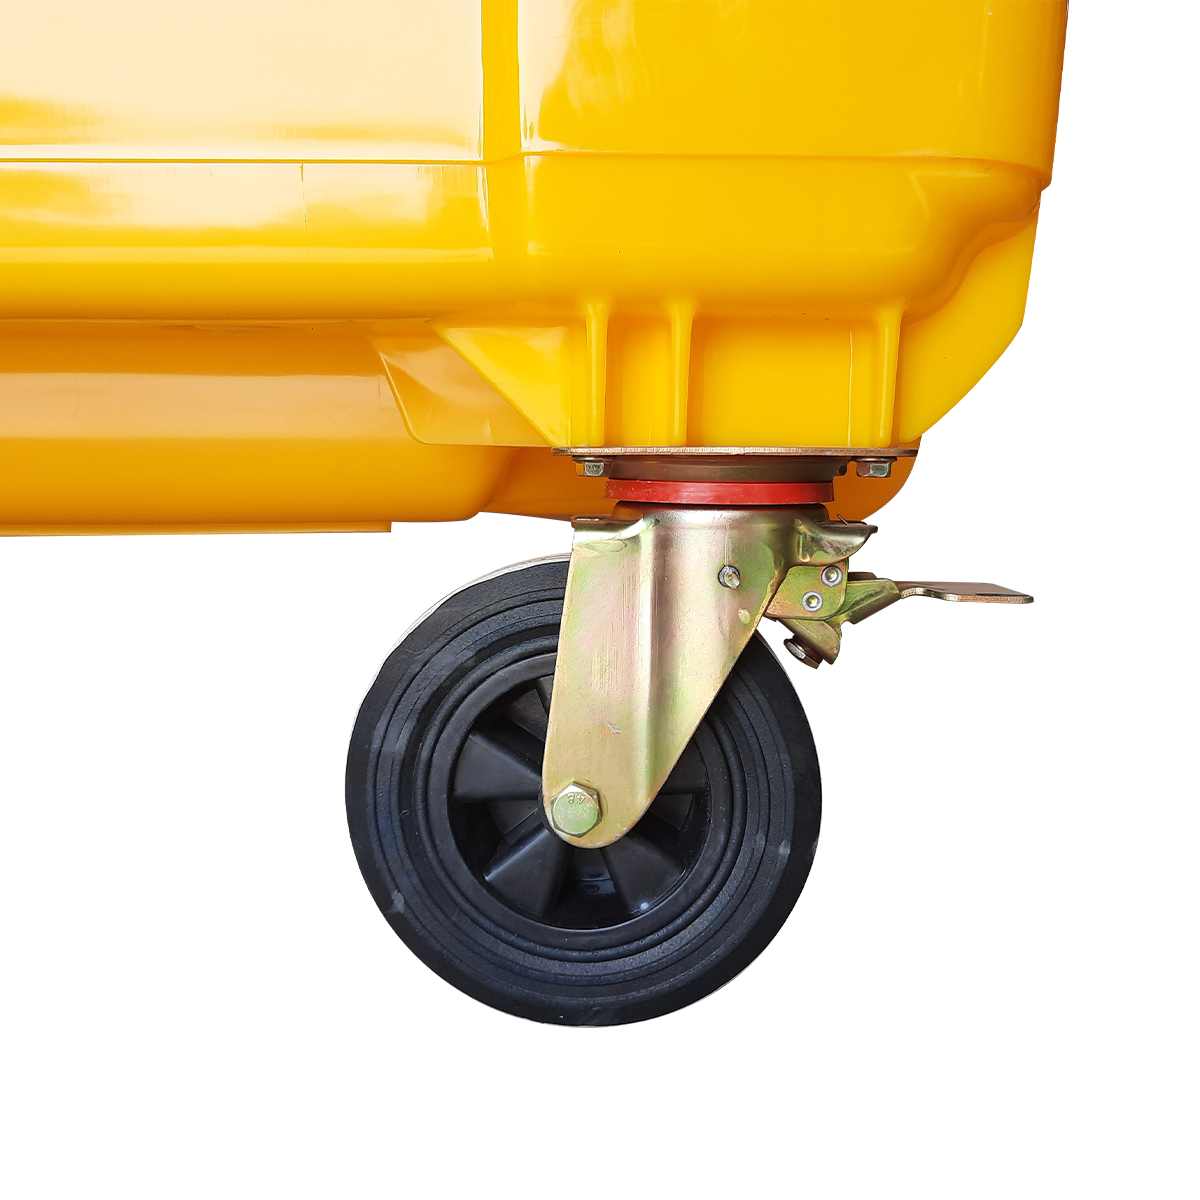 ถังขยะเทศบาลขนาดใหญ่ 1100 ลิตร และมีหูเกี่ยว (Lazy Arm) สีเหลือง